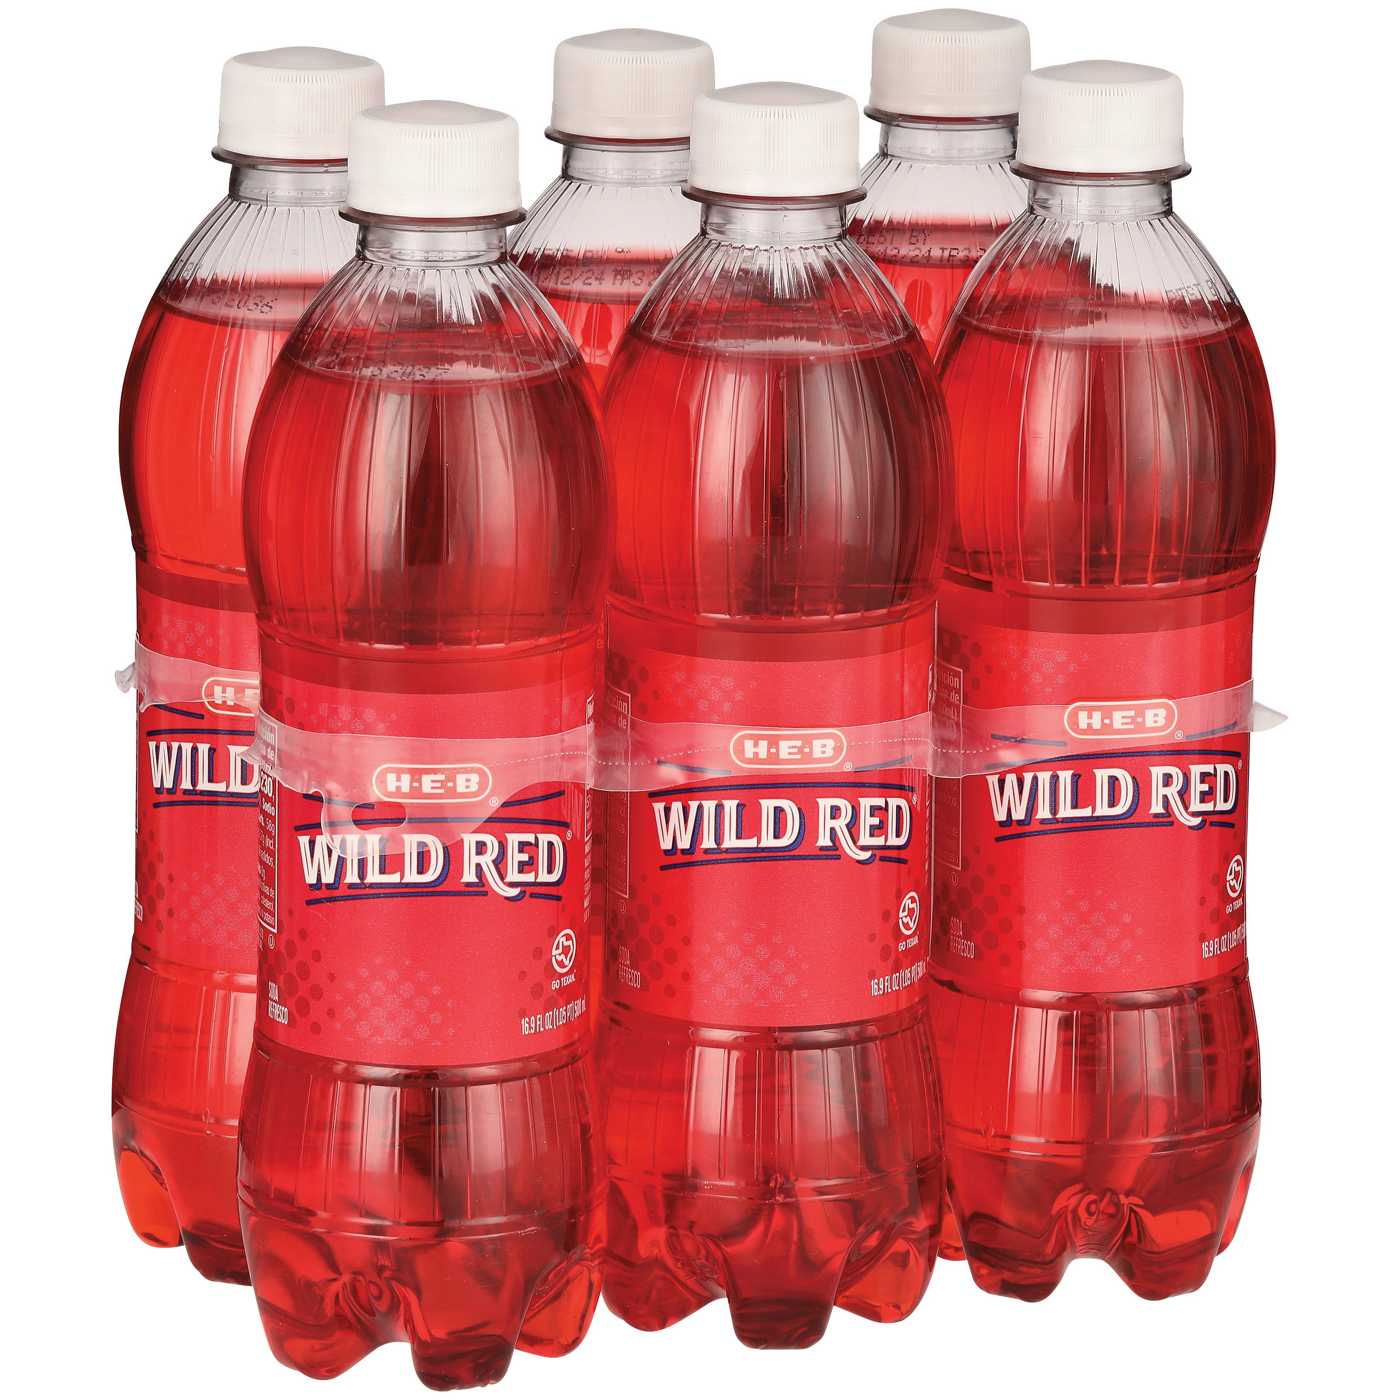 H-E-B Wild Red Soda 6 pk Bottles; image 2 of 2